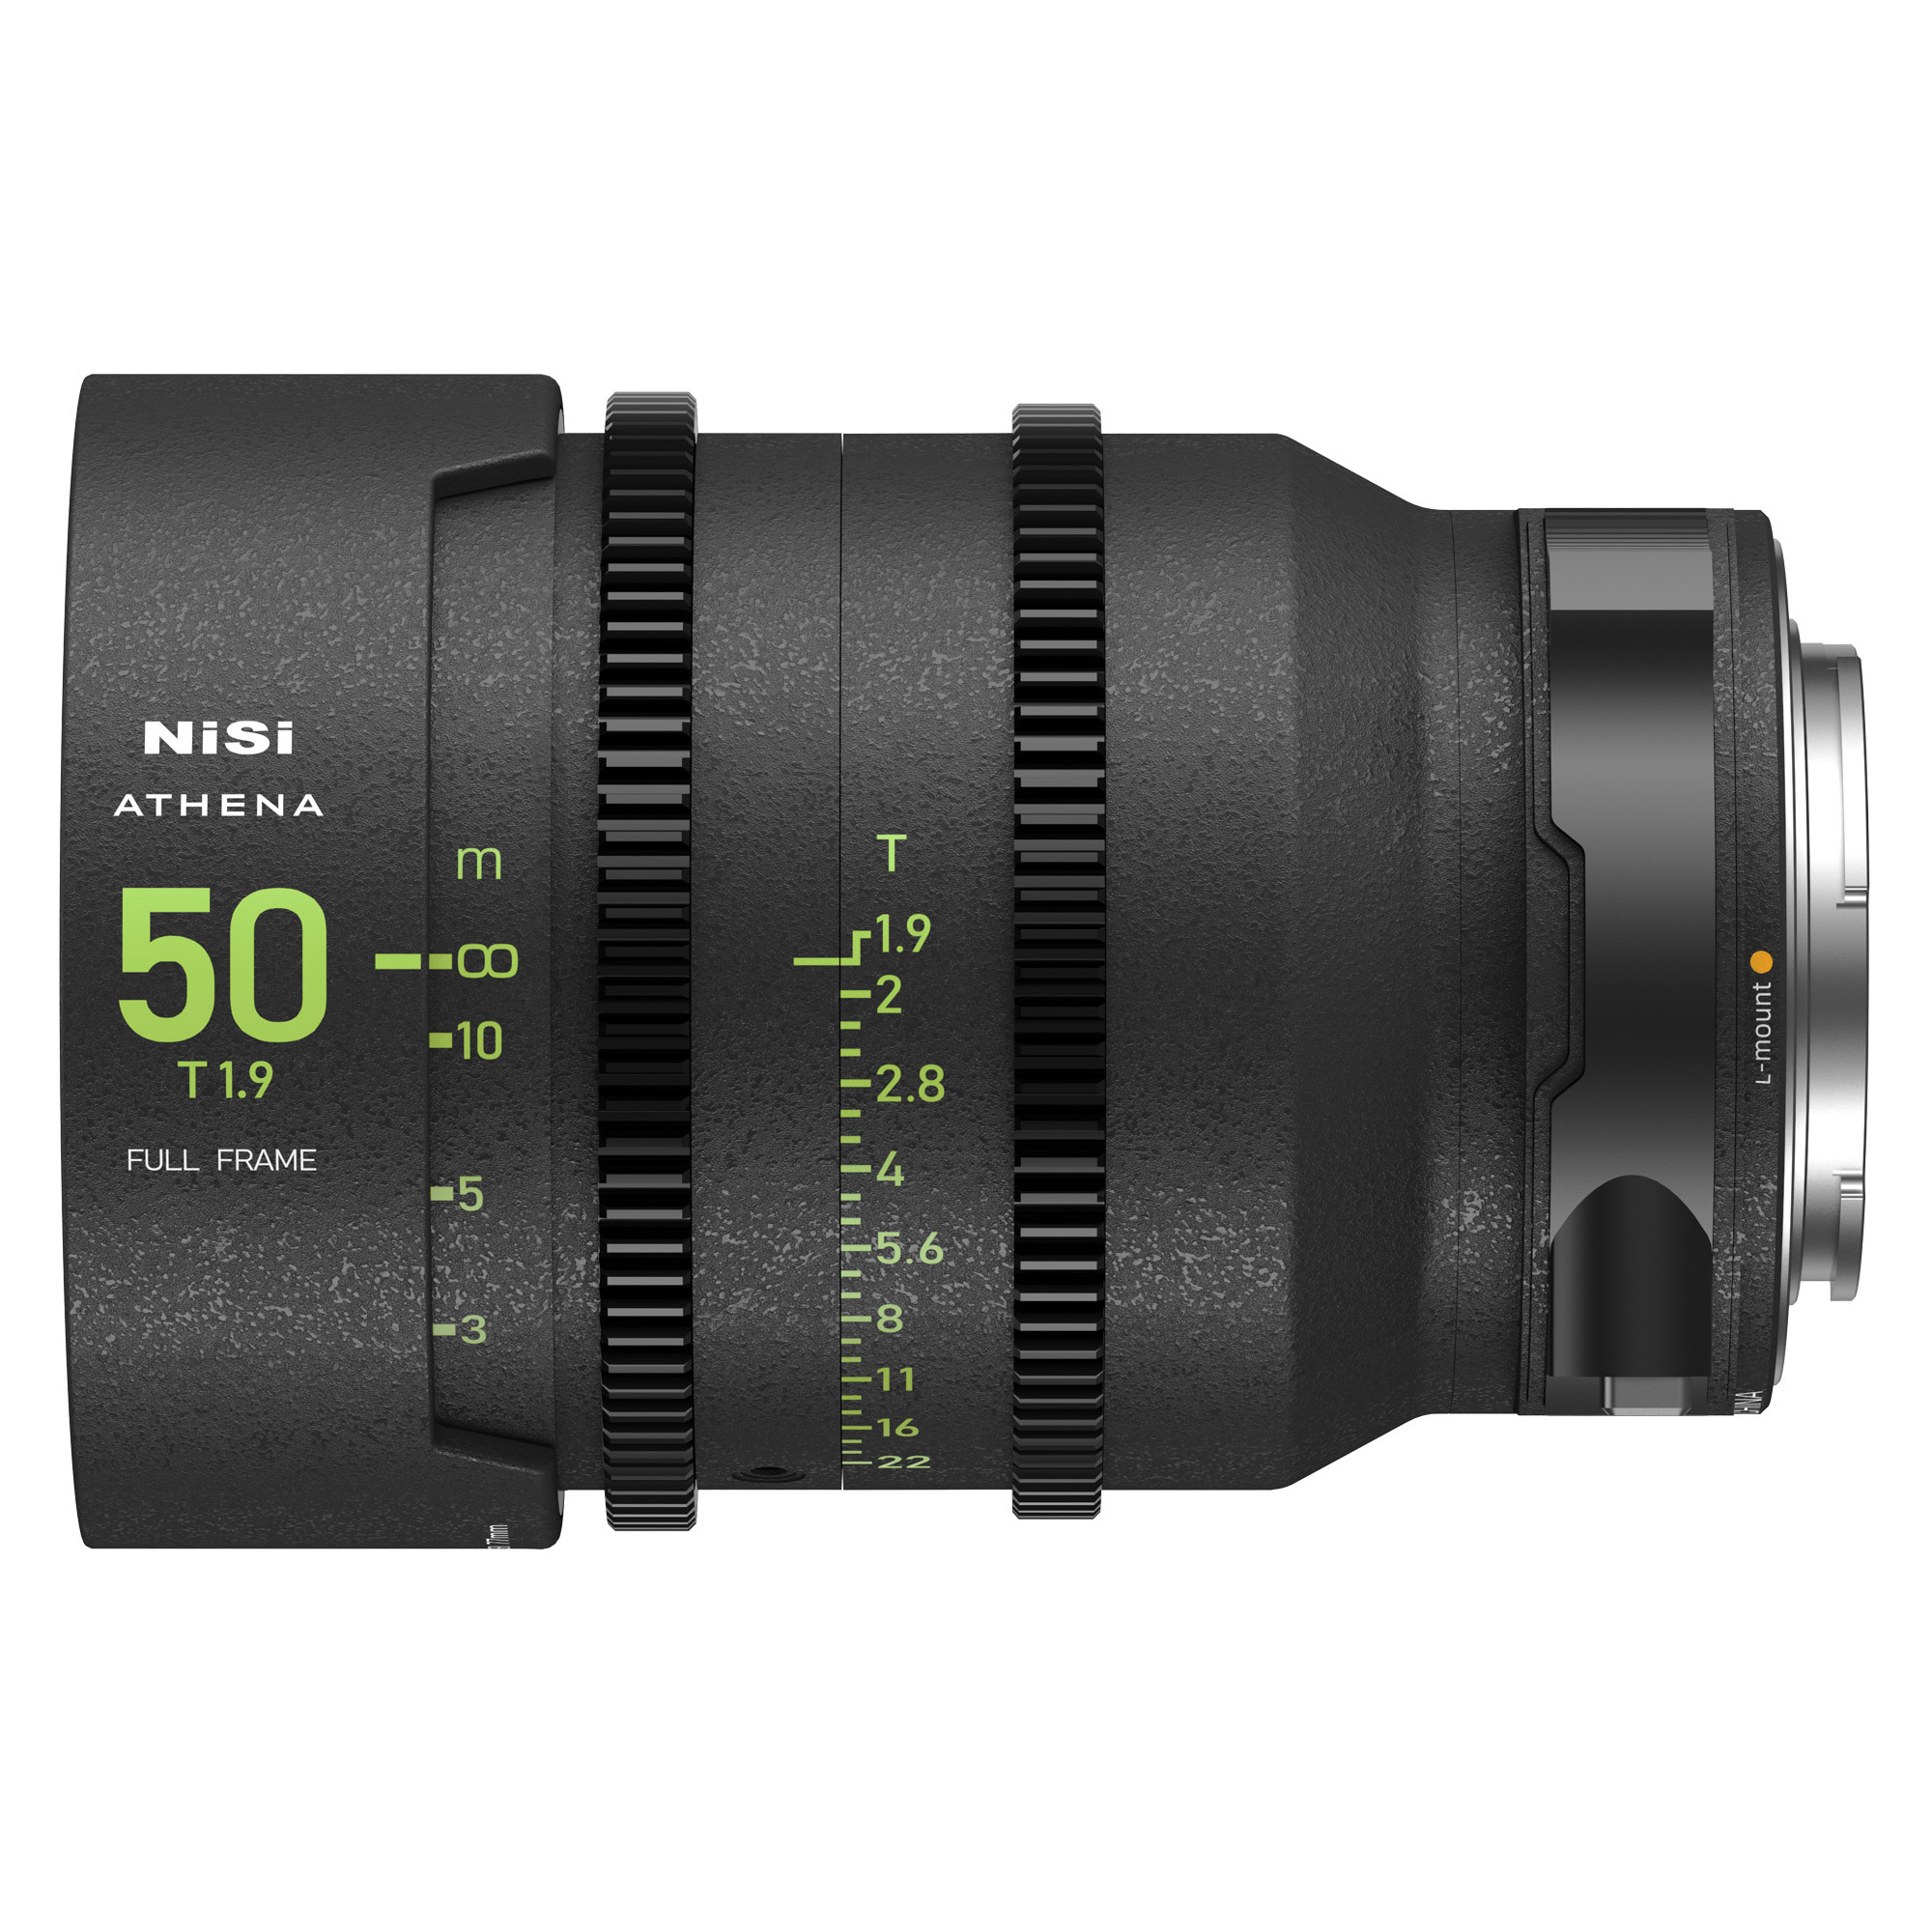 NiSi ATHENA PRIME 50mm T1.9 Full-Frame Lens (L Mount)